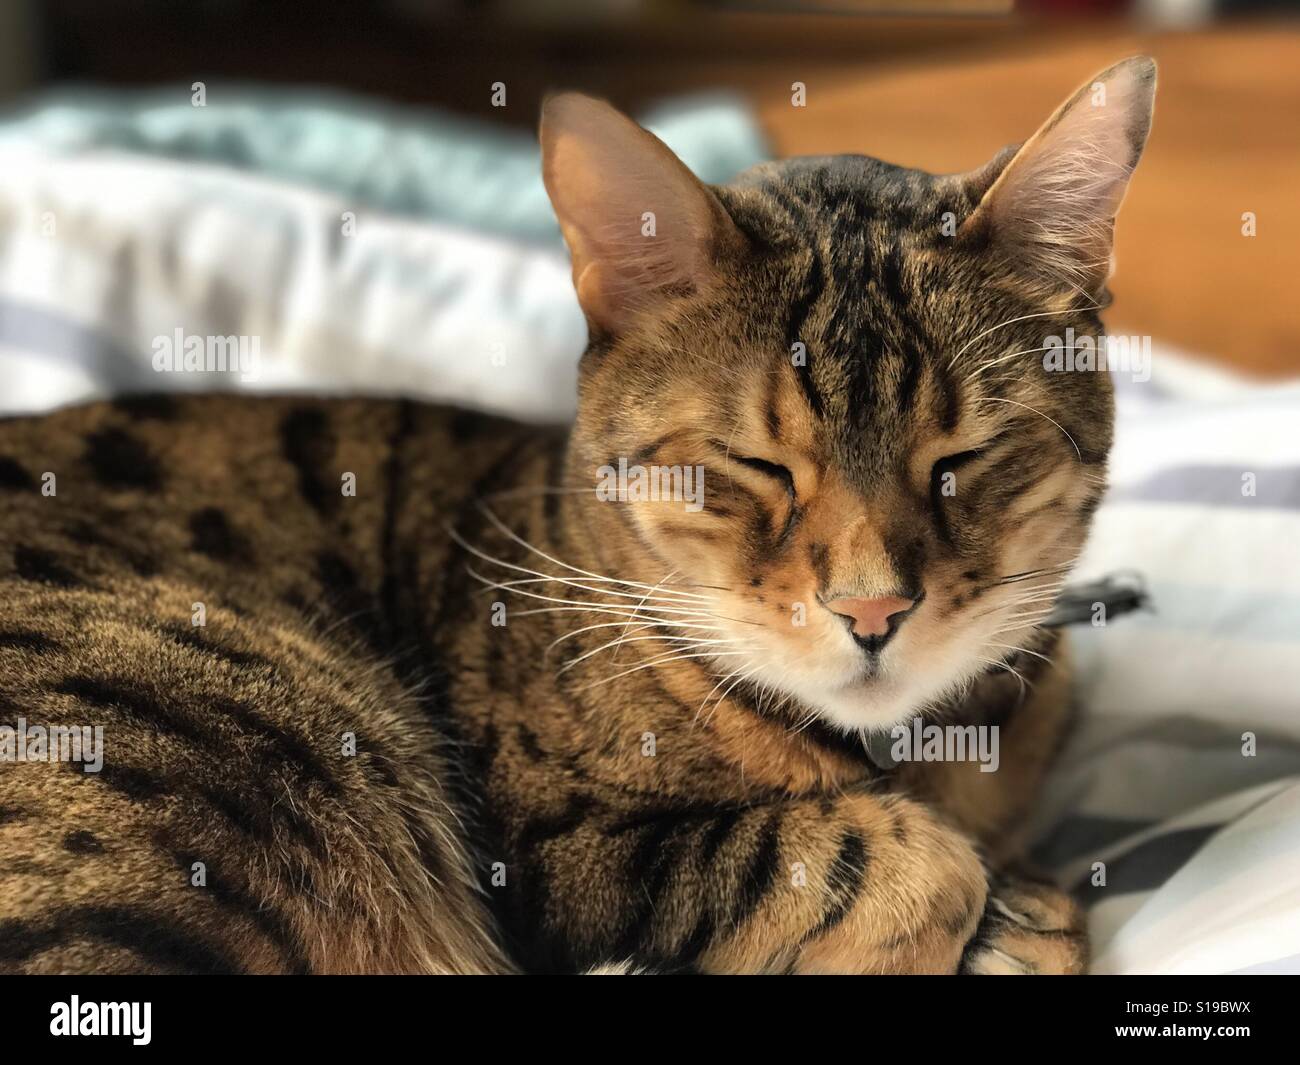 A pedigree Bengal cat asleep indoors. Stock Photo